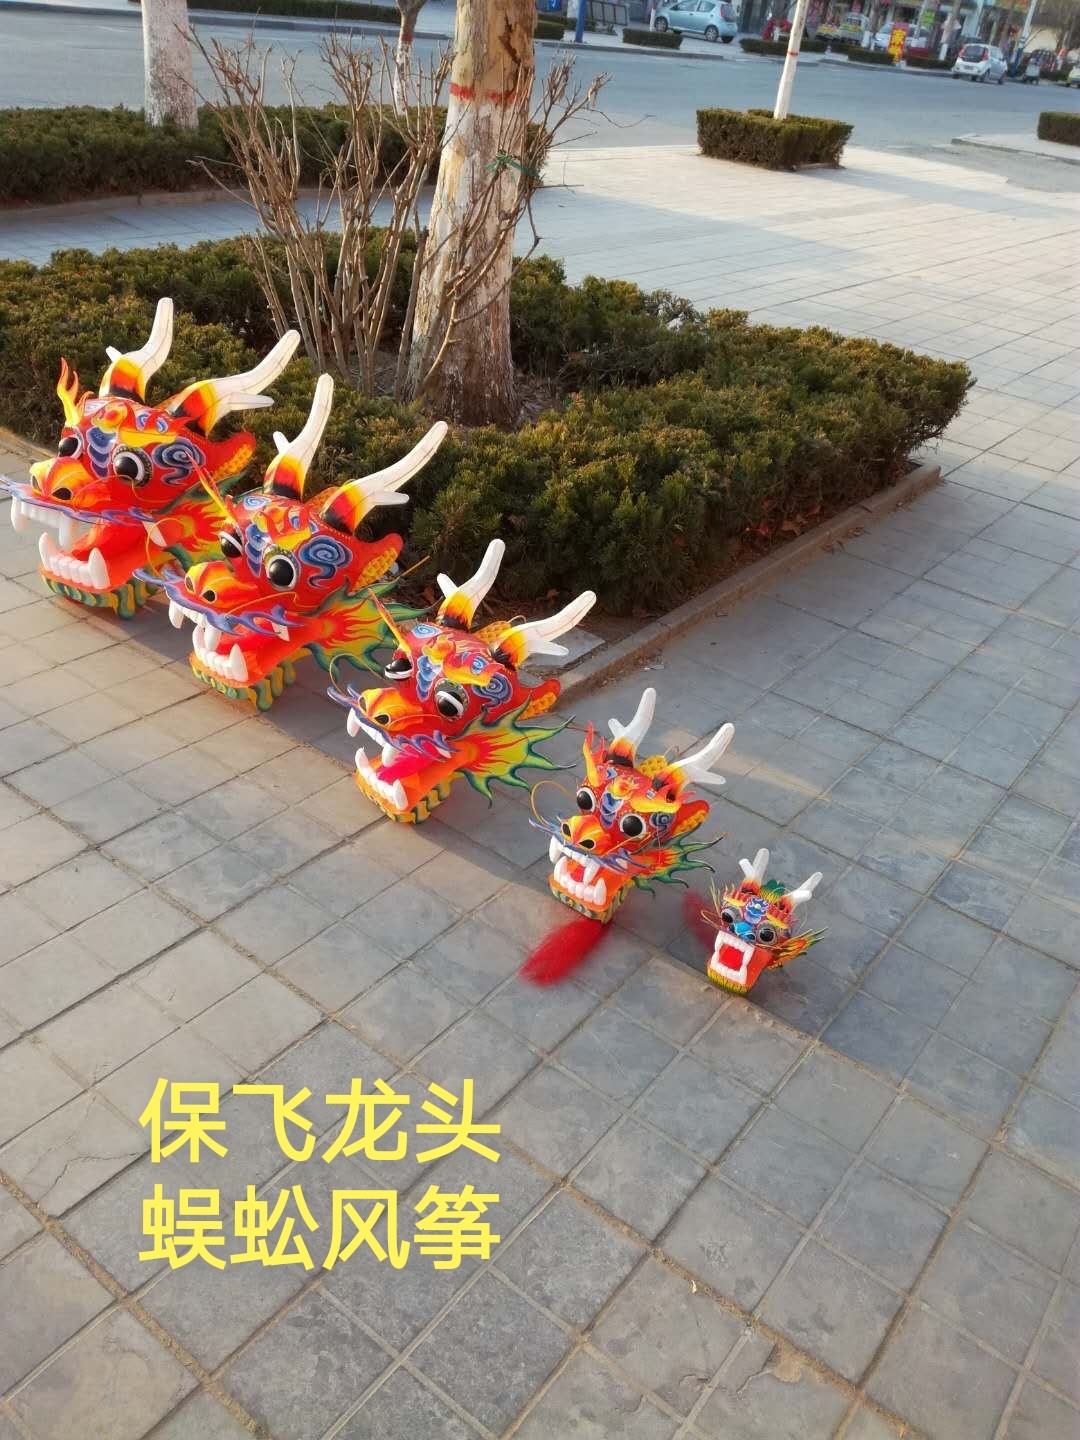 潍坊龙头蜈蚣风筝立体手绘串式中国特色礼品传统民间龙年手工艺品